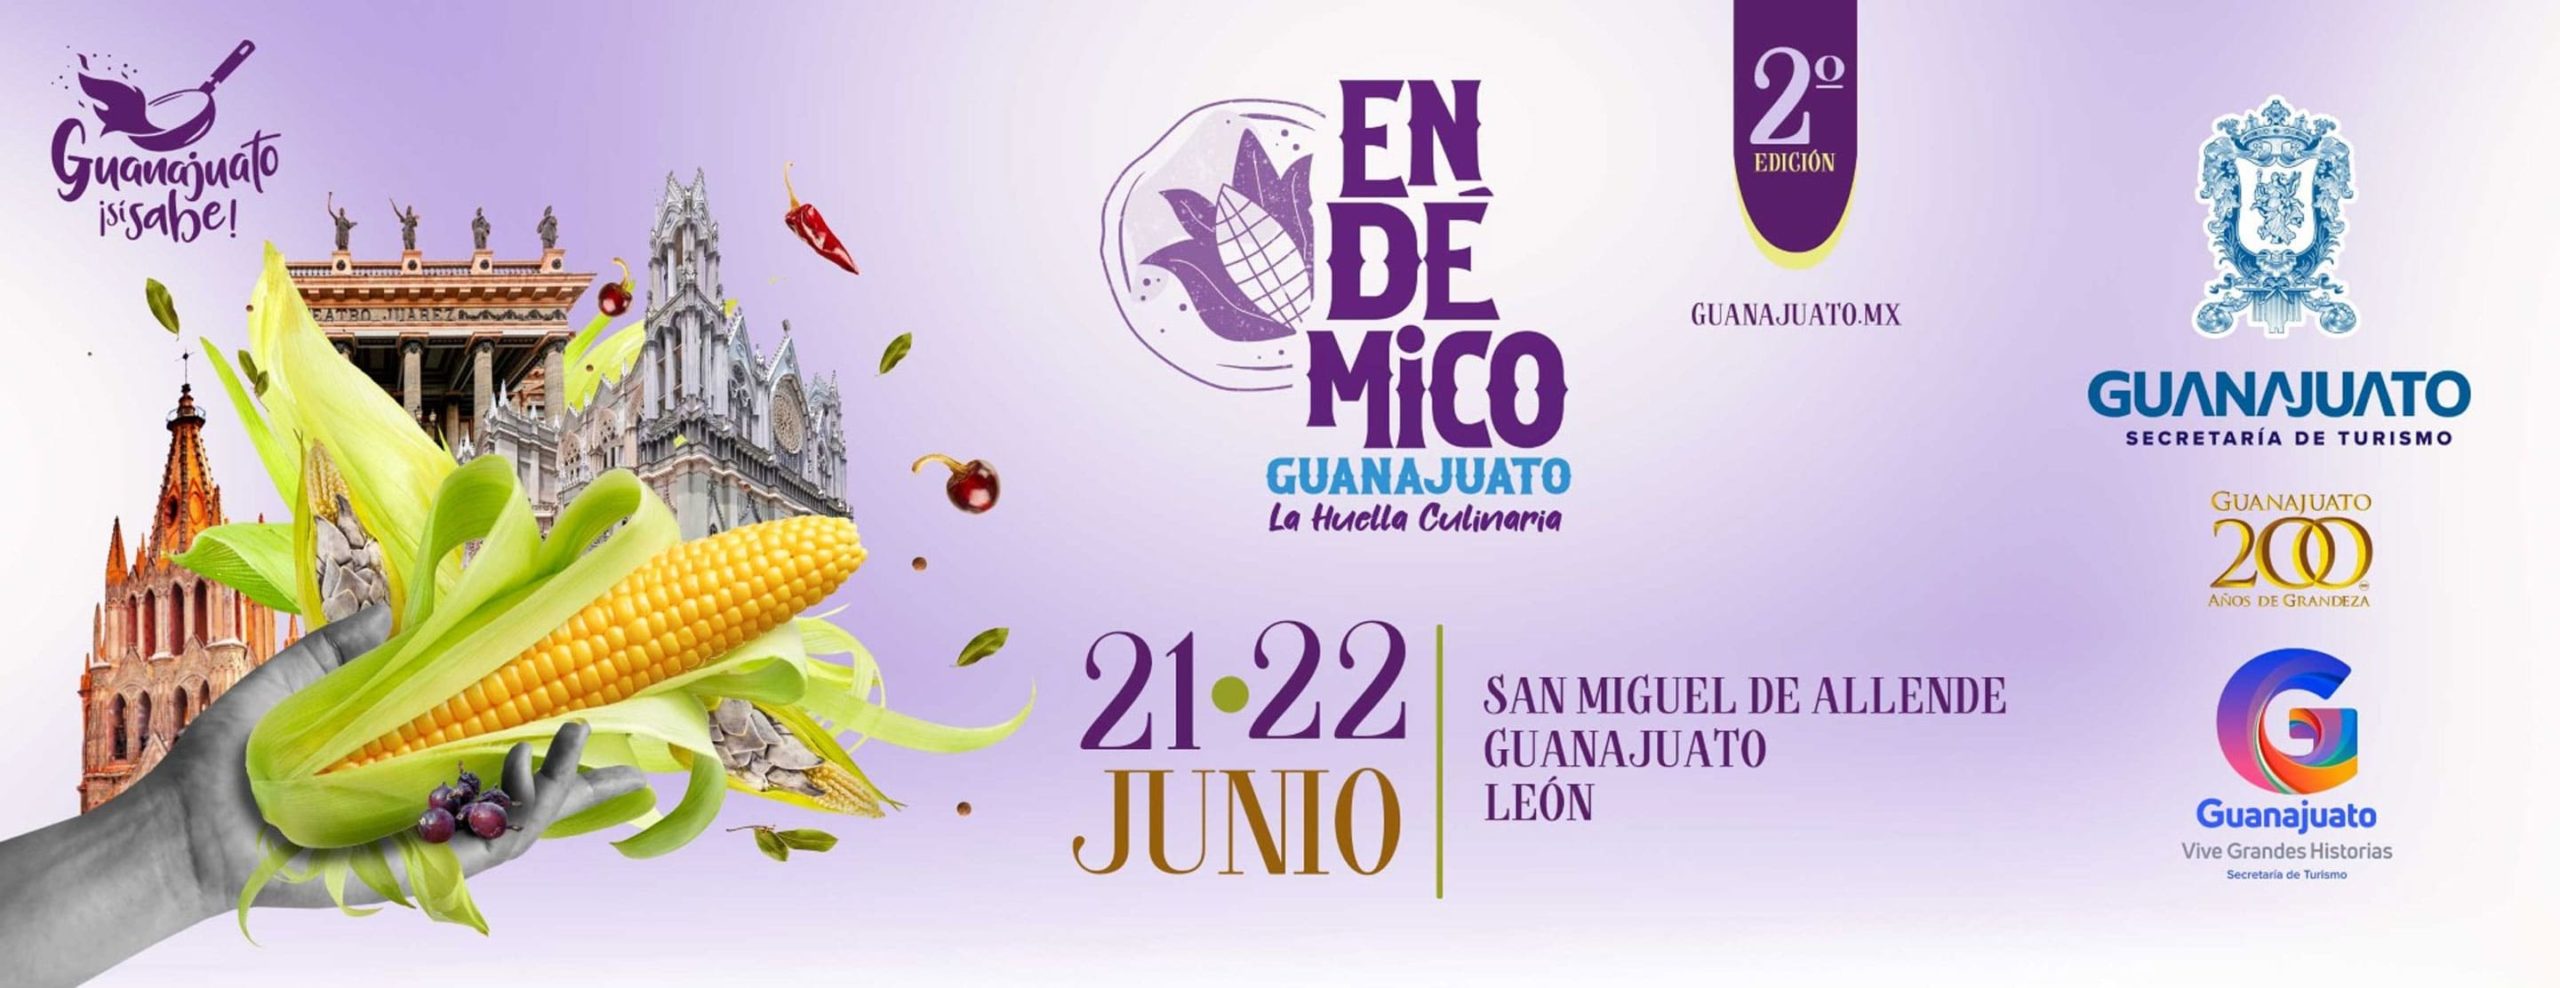 Endémico Guanajuato la huella culinaria 2a edición San Miguel de Allende Guanajuato y León